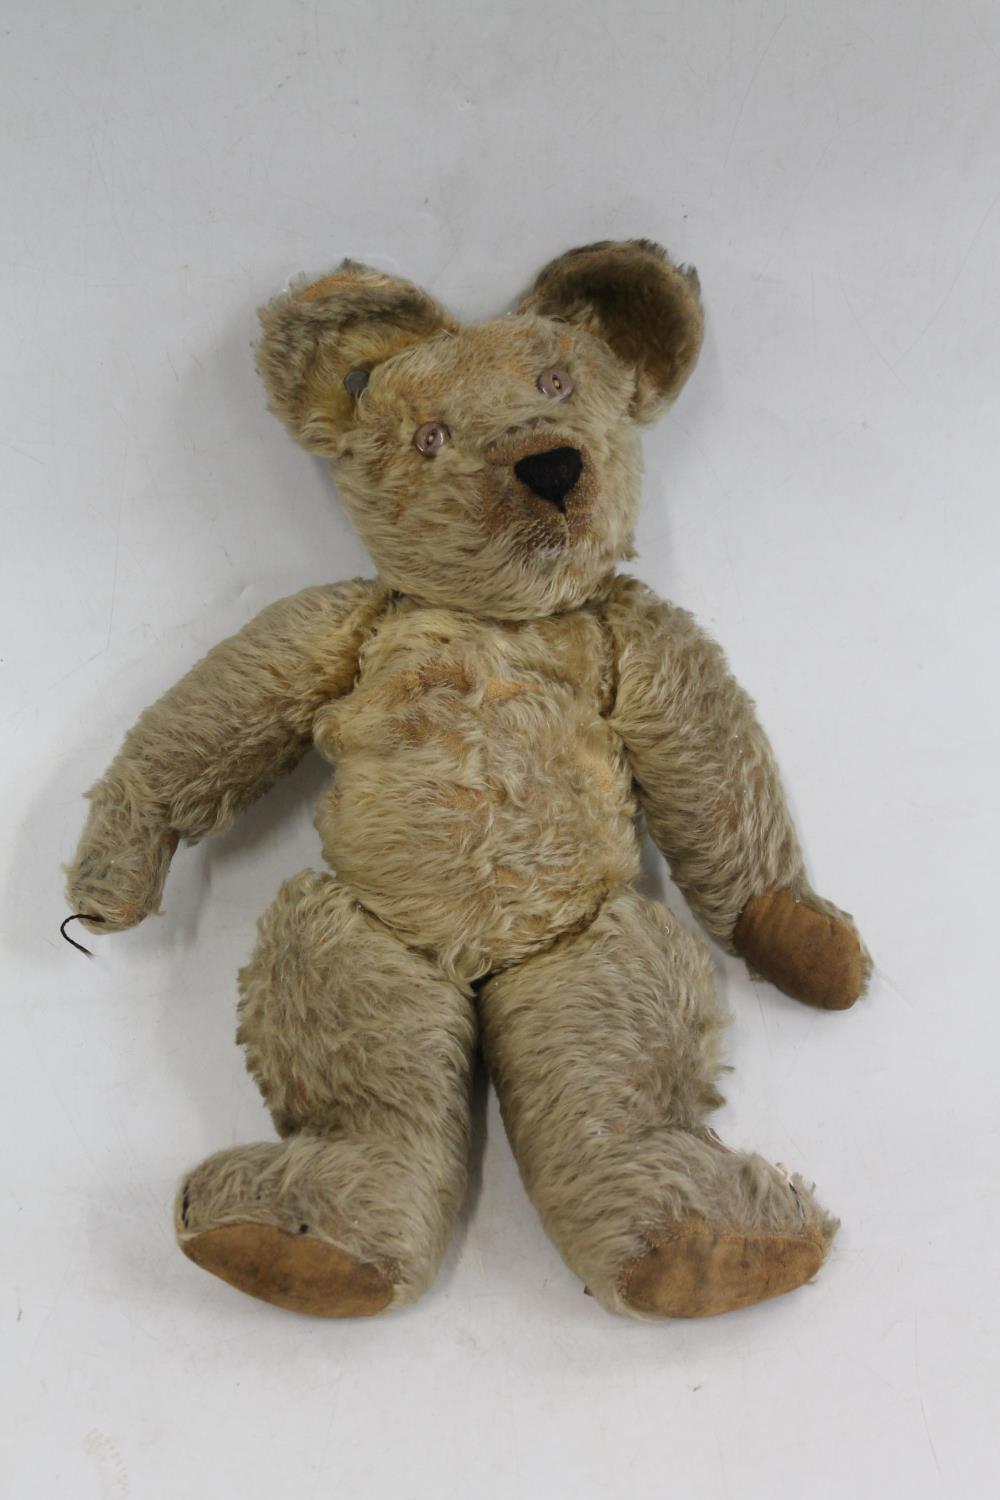 Early Steiff style button ear teddy bear, mohair with articulate limbs and hunch back, 46cm long.